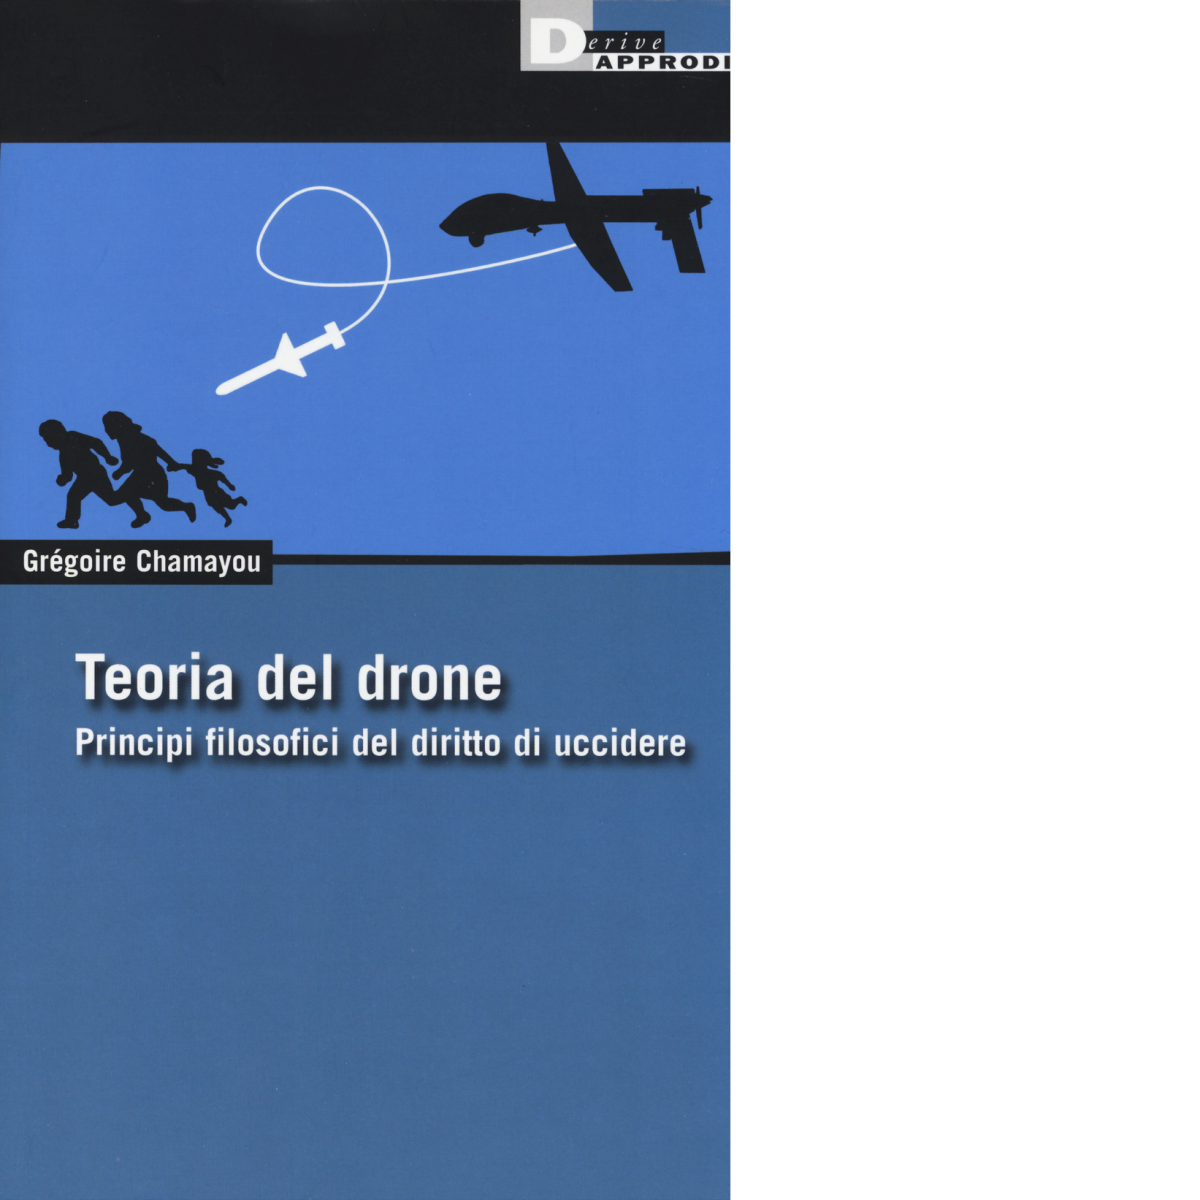 TEORIA DEL DRONE. di GREGOIRE CHAMAYOU - DeriveApprodi editore, 2014